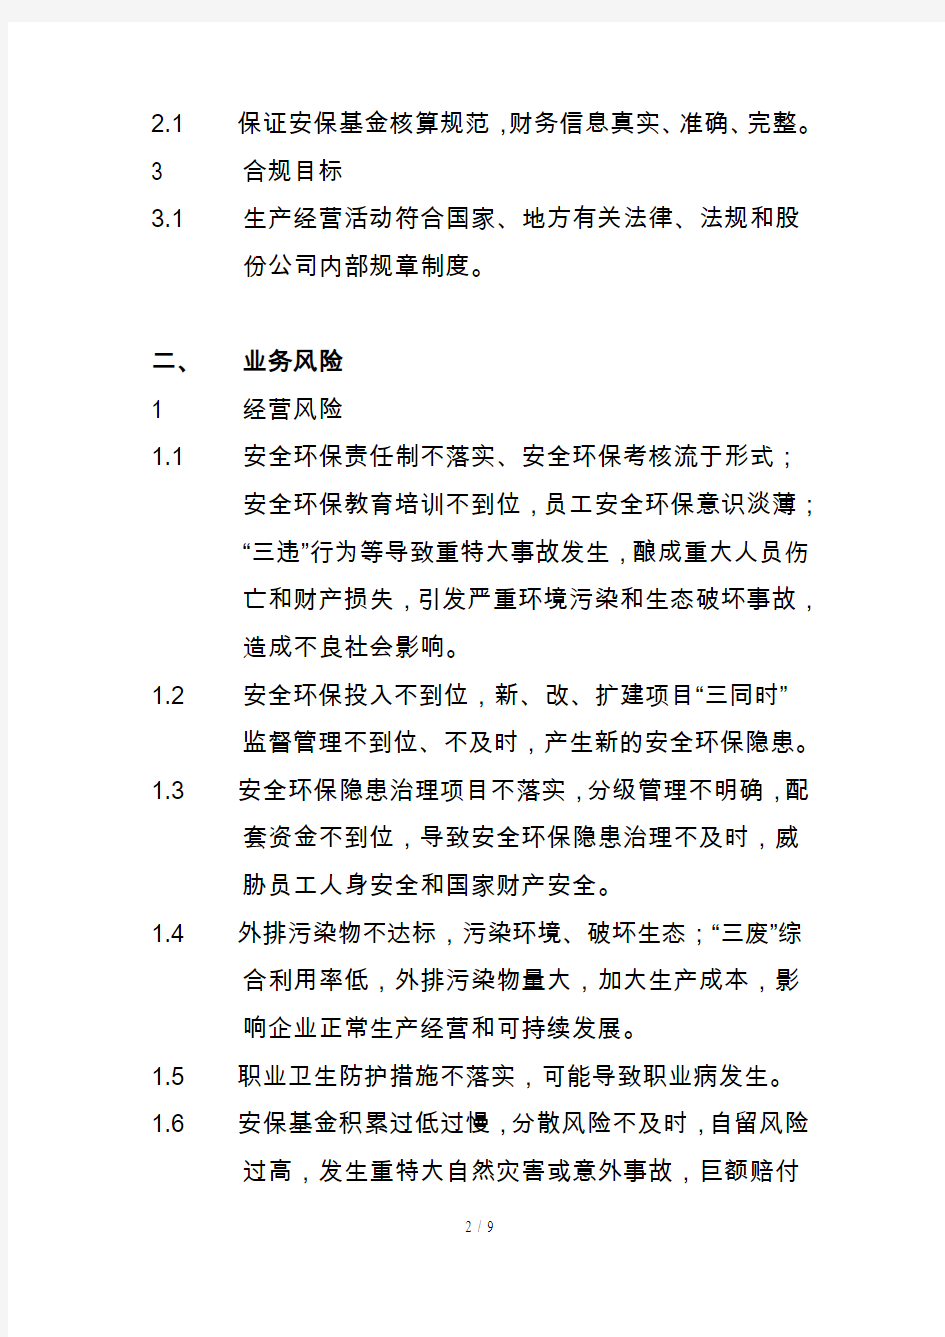 中国石化公司内部控制与业务流程汇总39